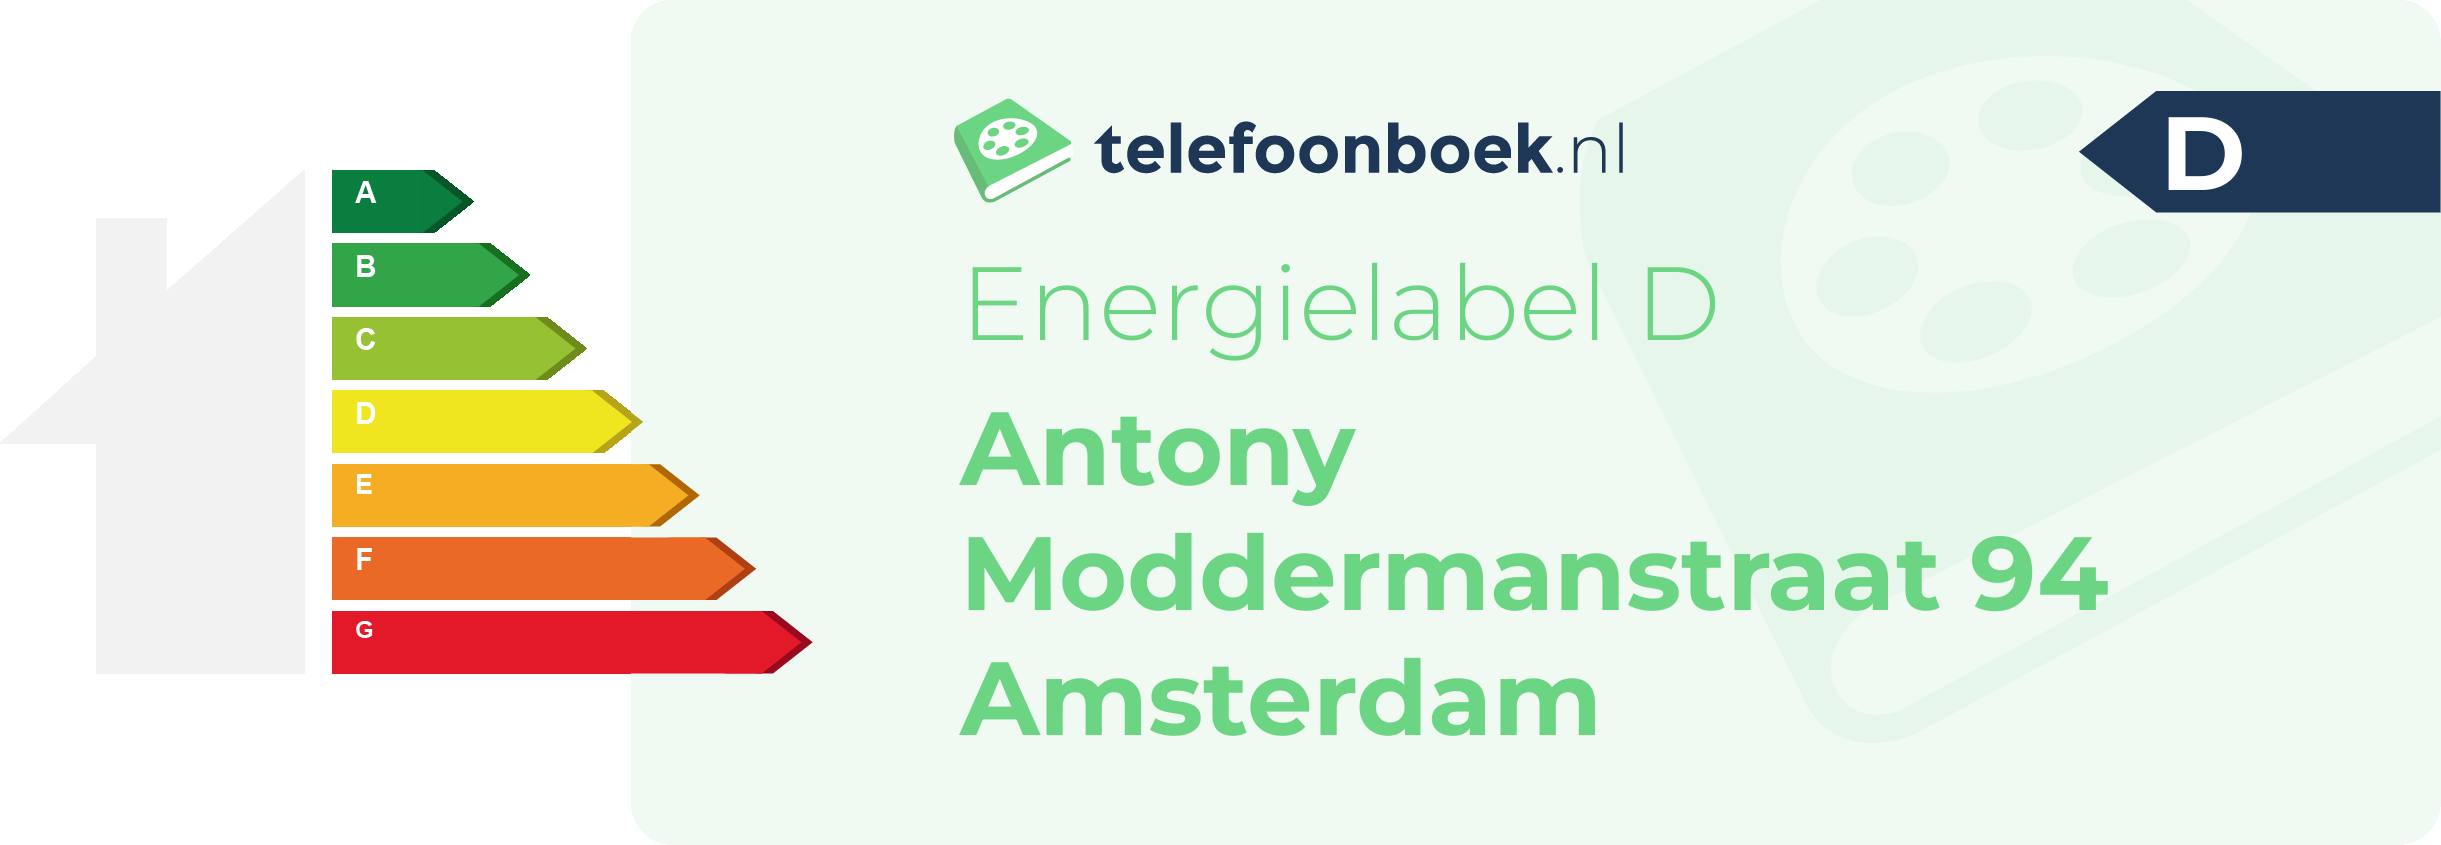 Energielabel Antony Moddermanstraat 94 Amsterdam